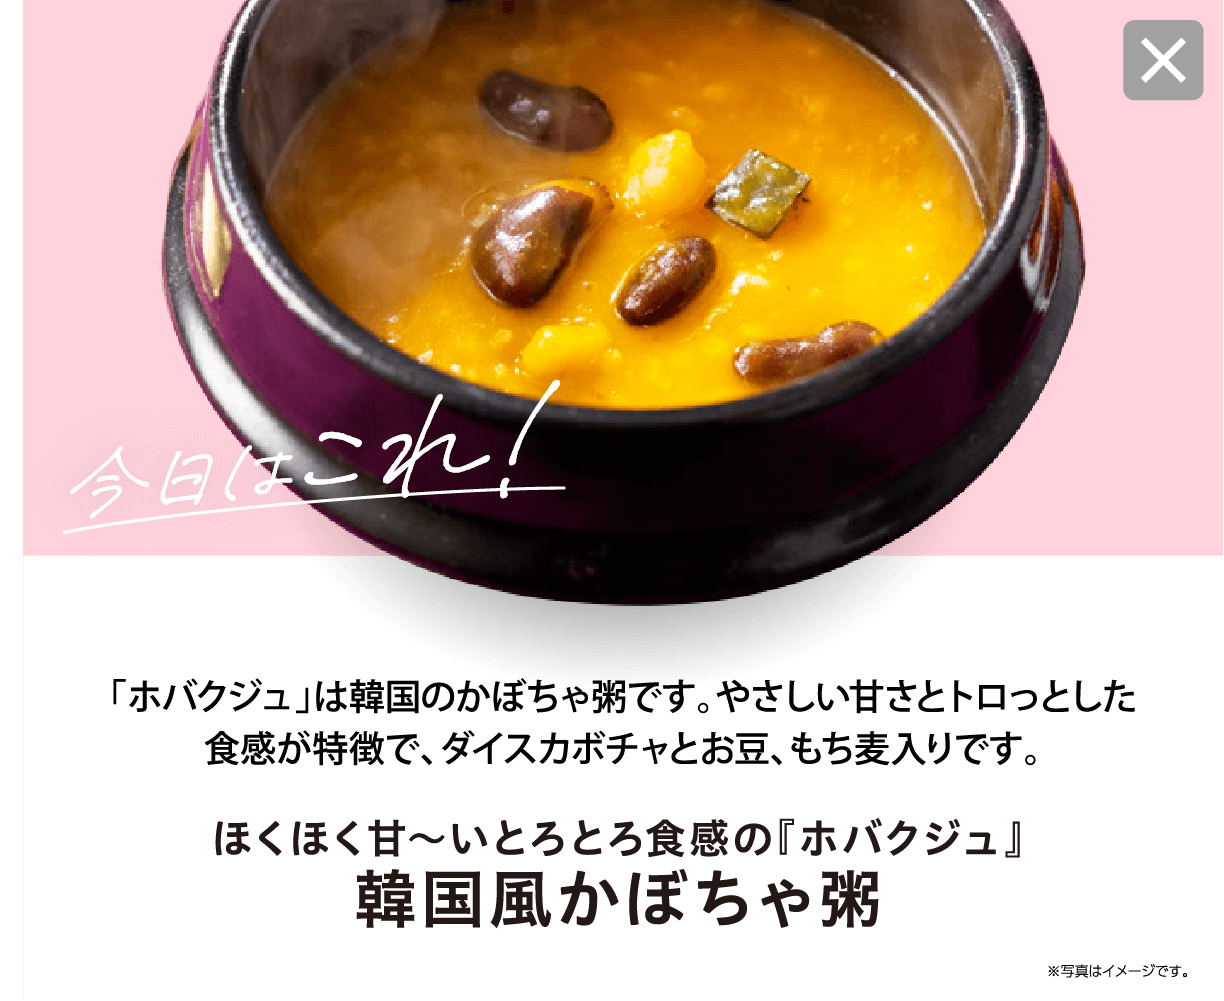 今日はこれ！ 「ホバクジュ」は韓国のかぼちゃ粥です。やさしい甘さとトロっとした食感が特徴で、ダイスカボチャとお豆、もち麦入りです。 ほくほく甘〜いとろとろ食感の『ホバクジュ』 韓国風かぼちゃ粥 ※写真はイメージです。